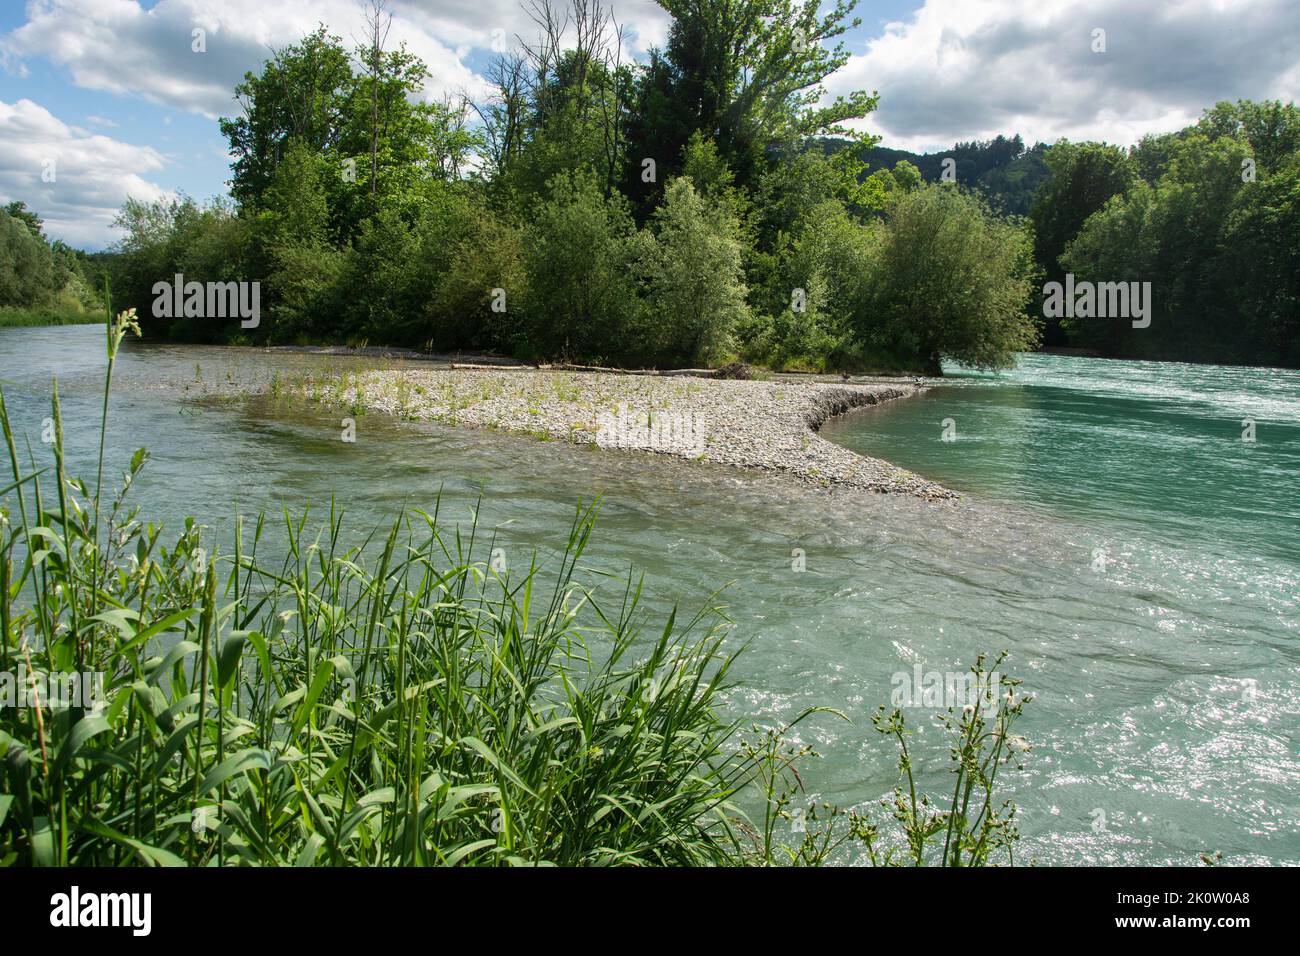 Die rentaurierte Aare zwischen Münsingen und Bern, ein Smaragd-Naturschutzgebiet und Aue von Nationaler Bedeutung Foto Stock